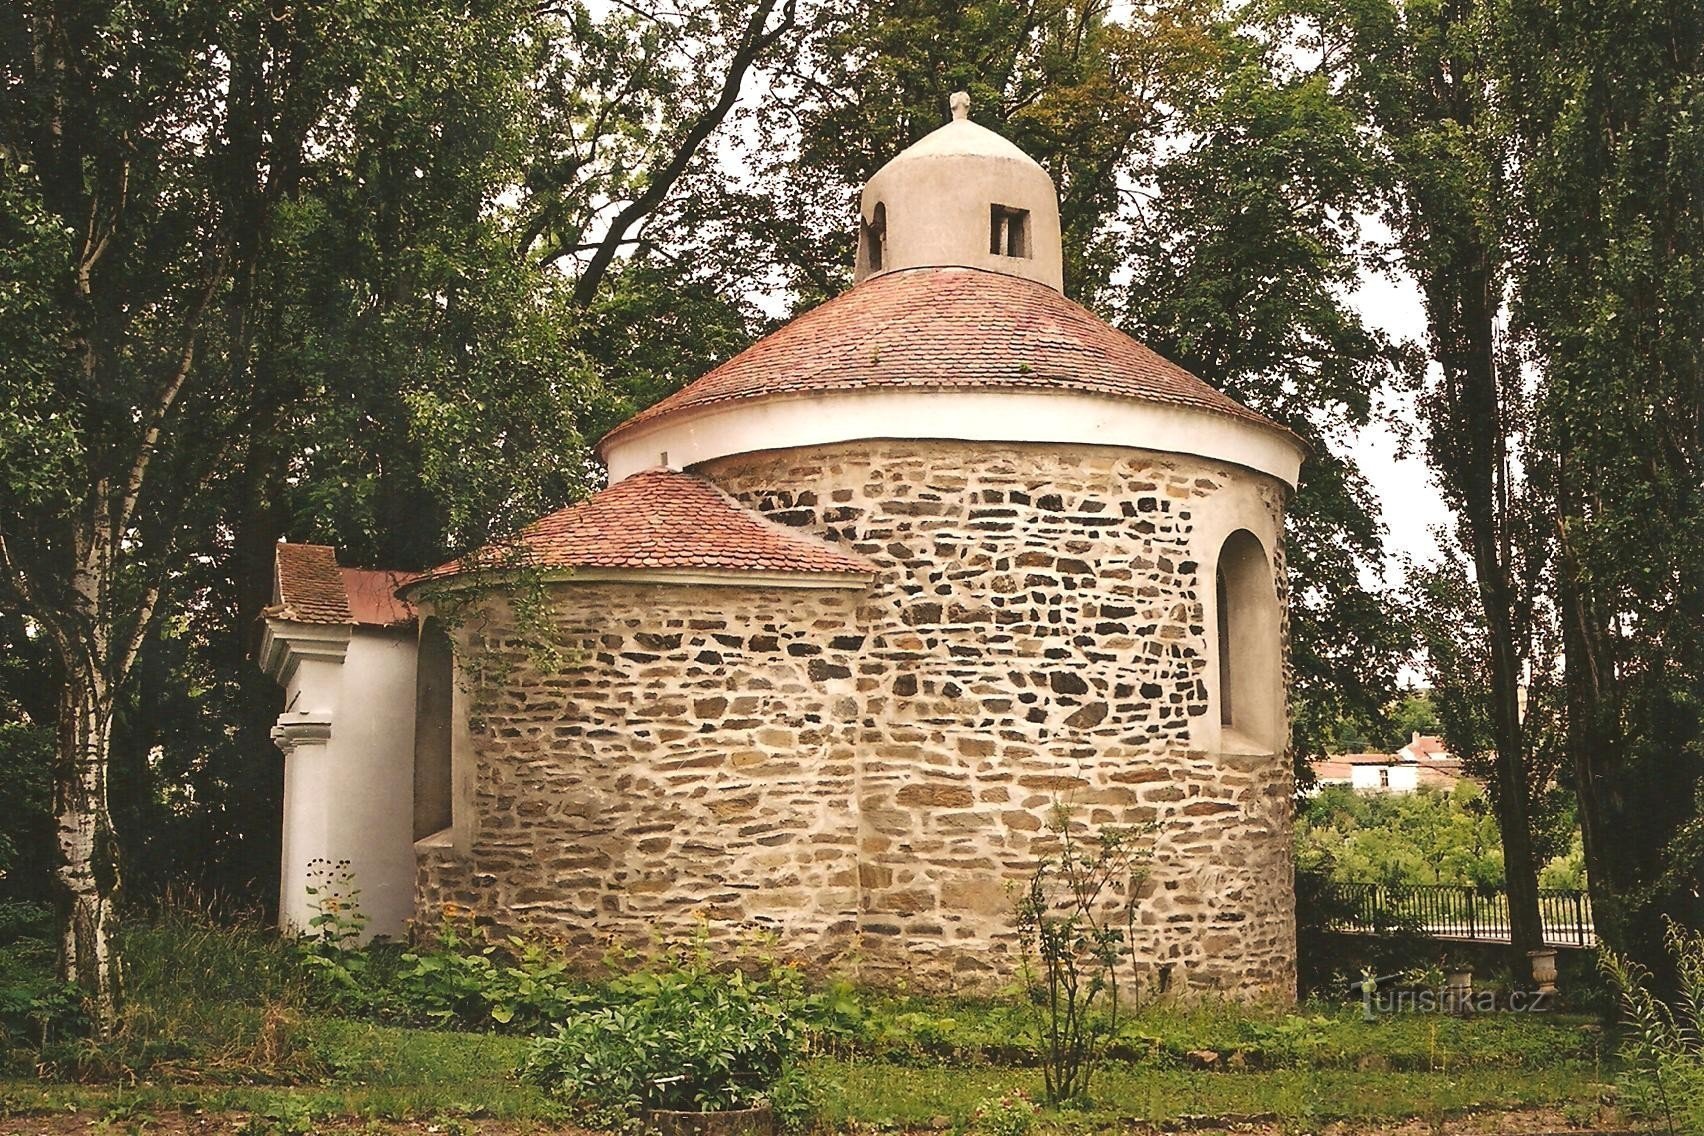 Plaveč - Romanesque rotunda